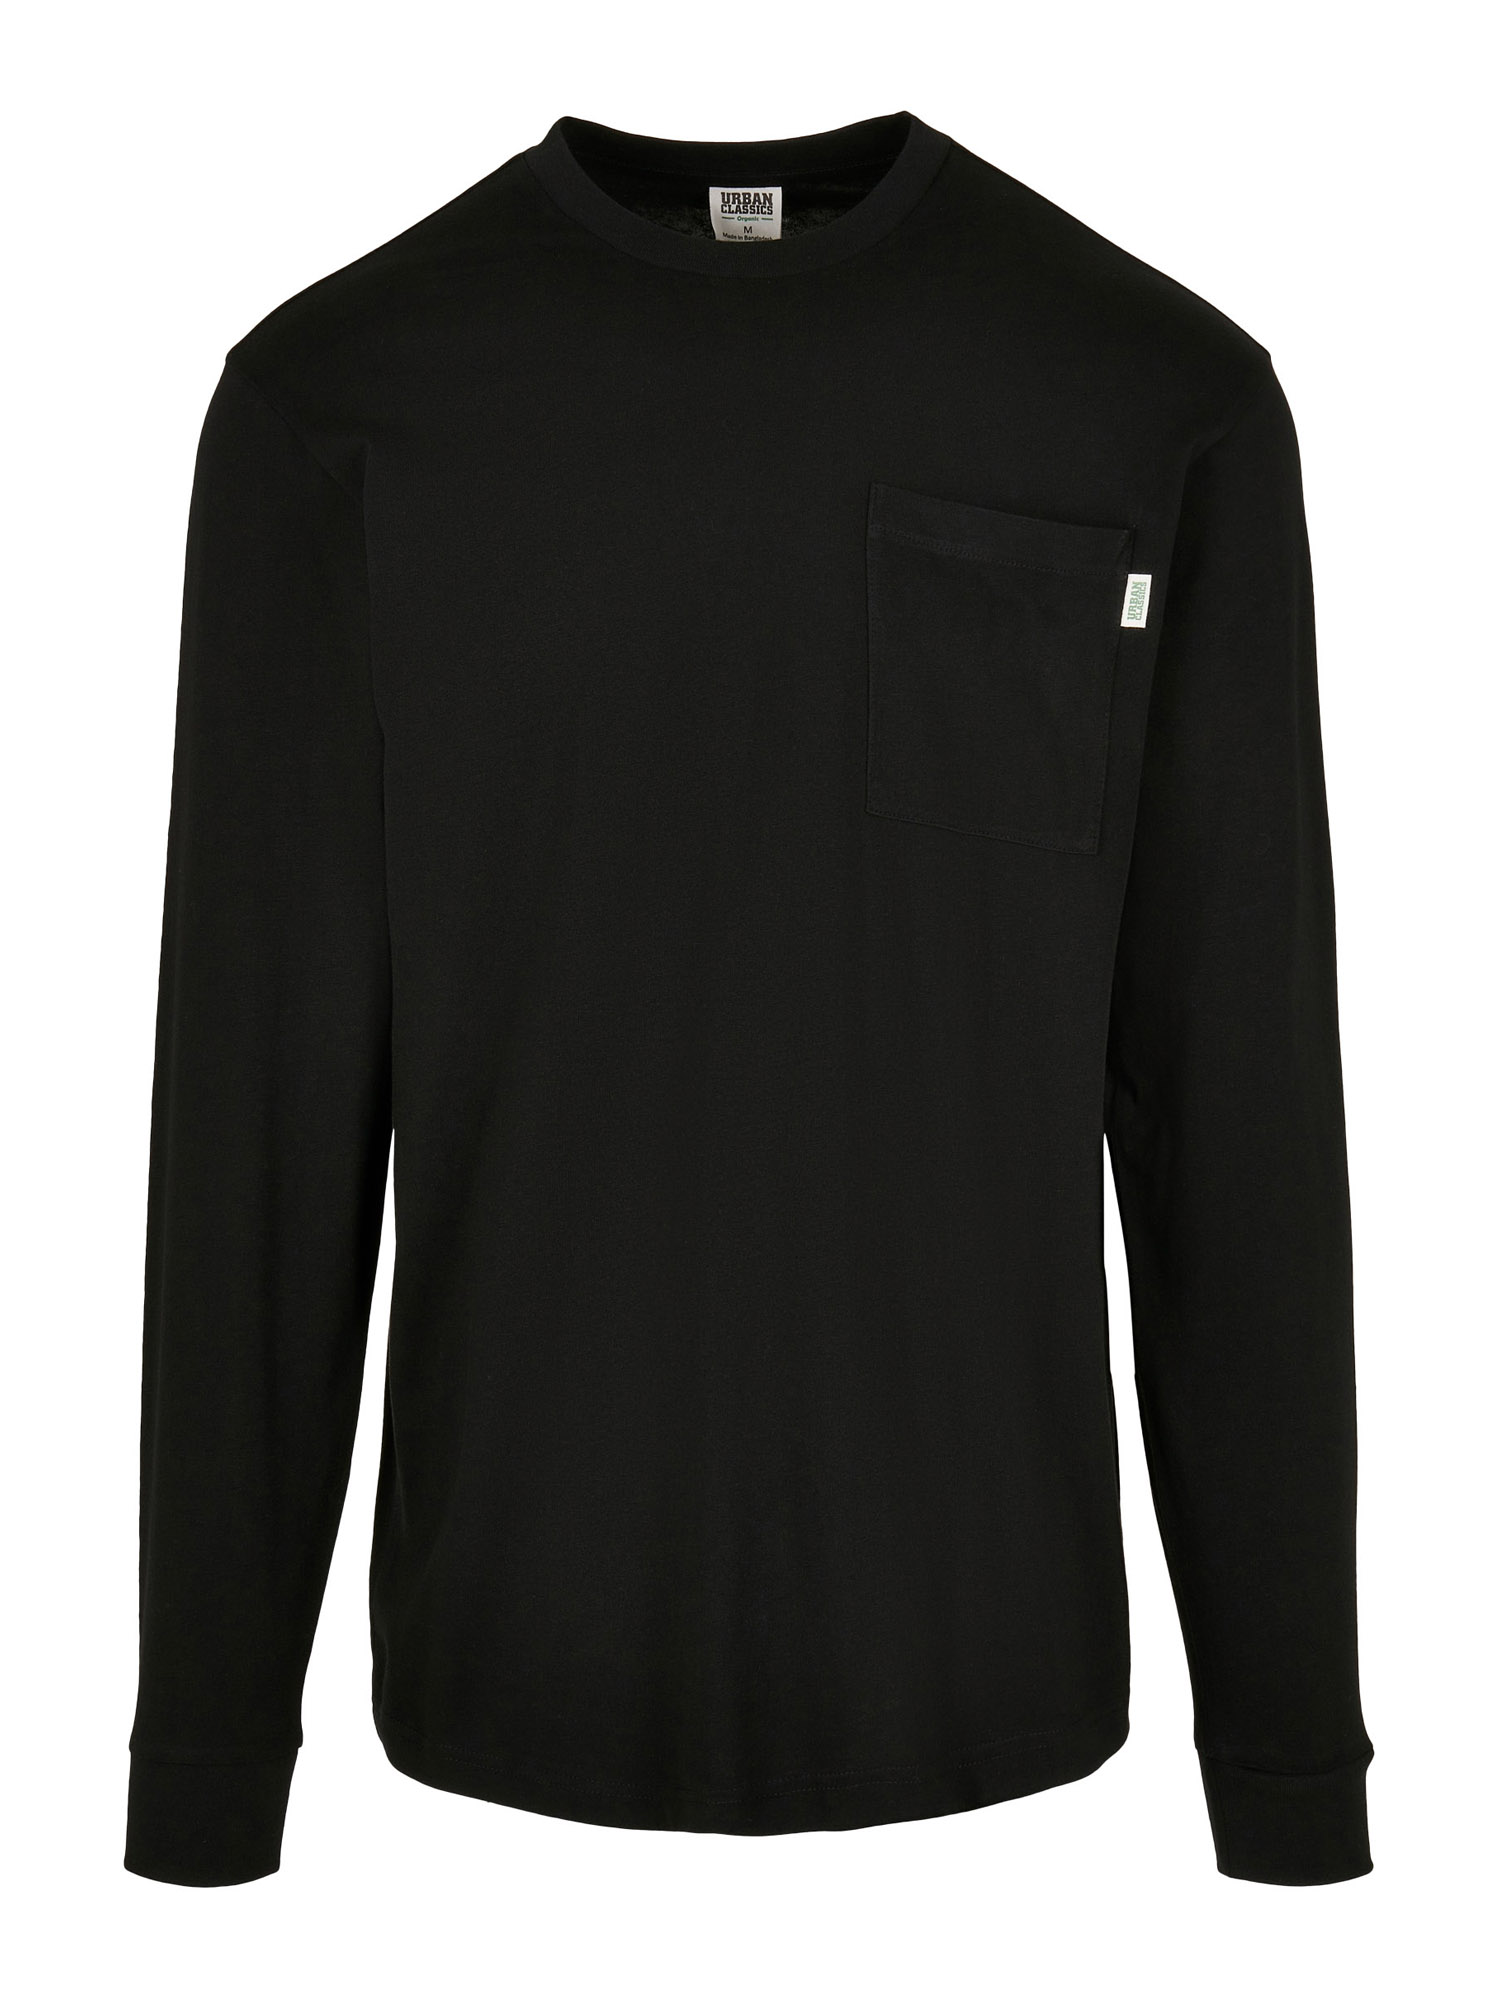 Odzież gFxoW Urban Classics Koszulka w kolorze Czarnym 